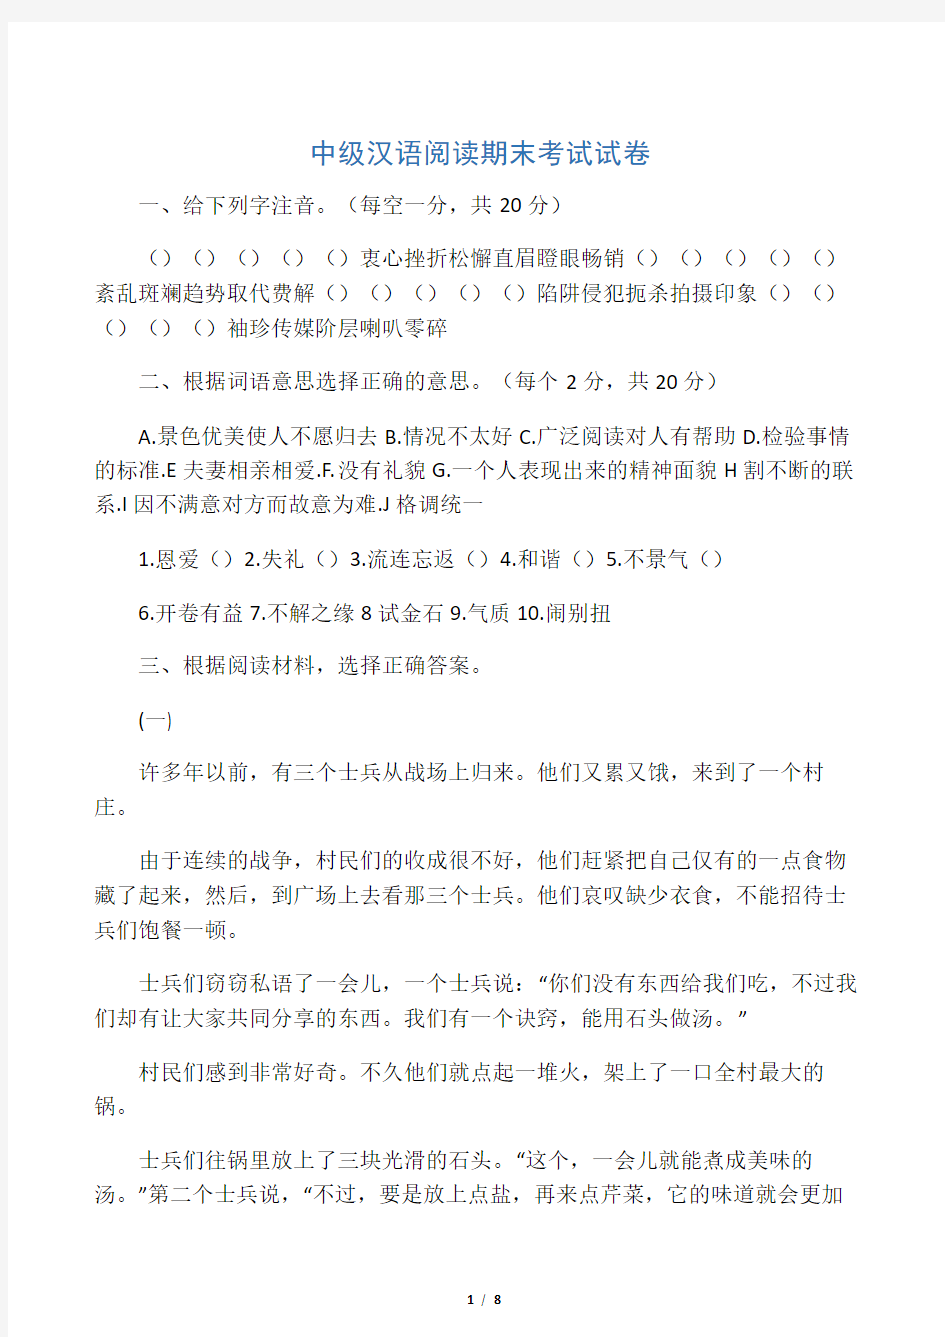 (完整版)中级汉语阅读期末考试试卷